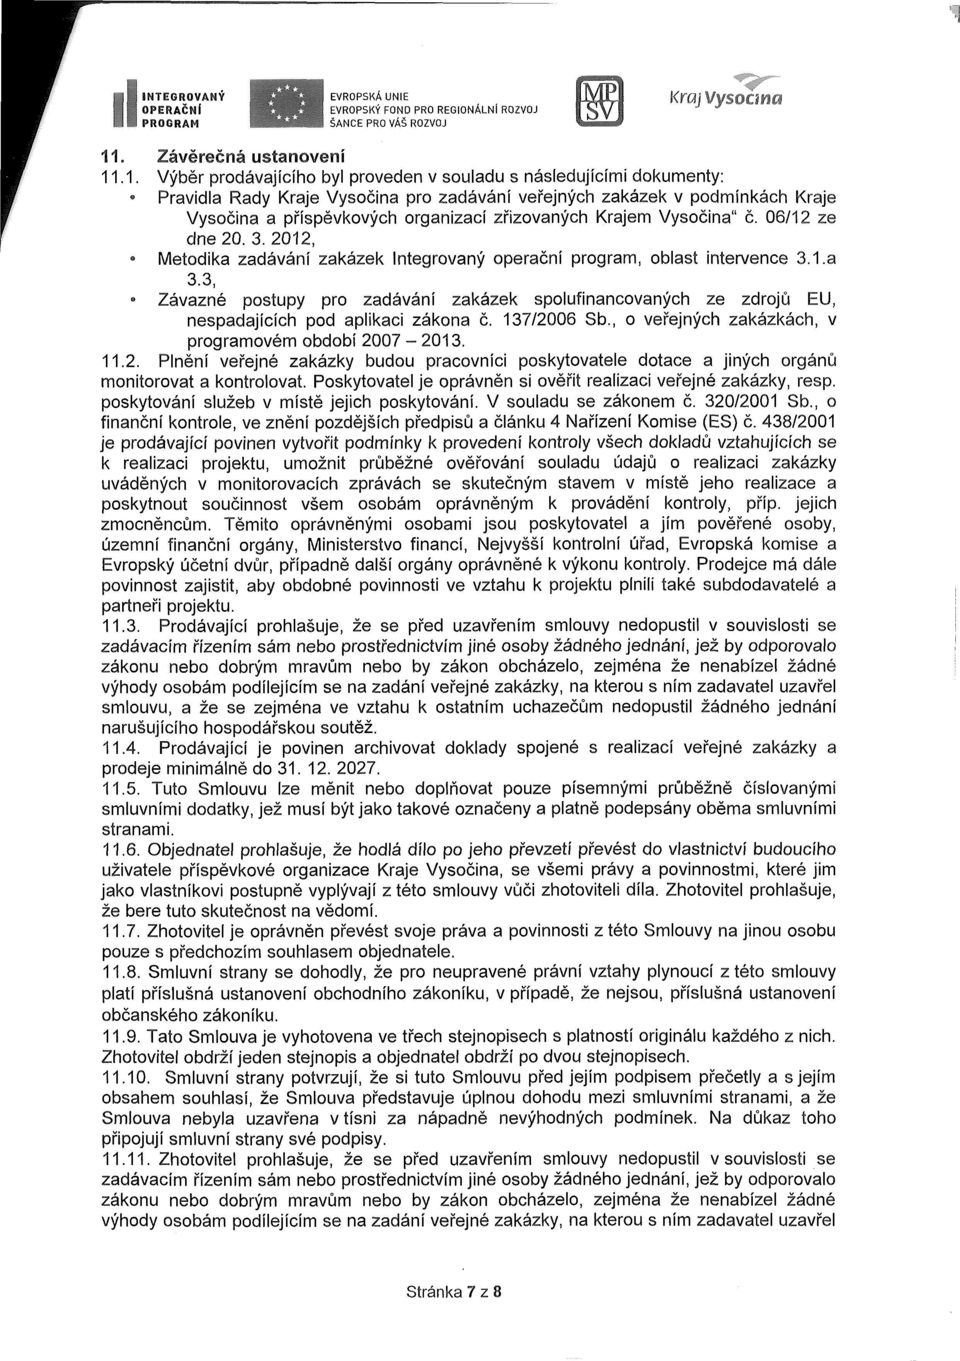 .1. Výběr prodávajícího byl proveden v souladu s následujícími dokumenty: Pravidla Rady Kraje Vysočina pro zadávání veřejných zakázek v podmínkách Kraje Vysočina a příspěvkových organizací